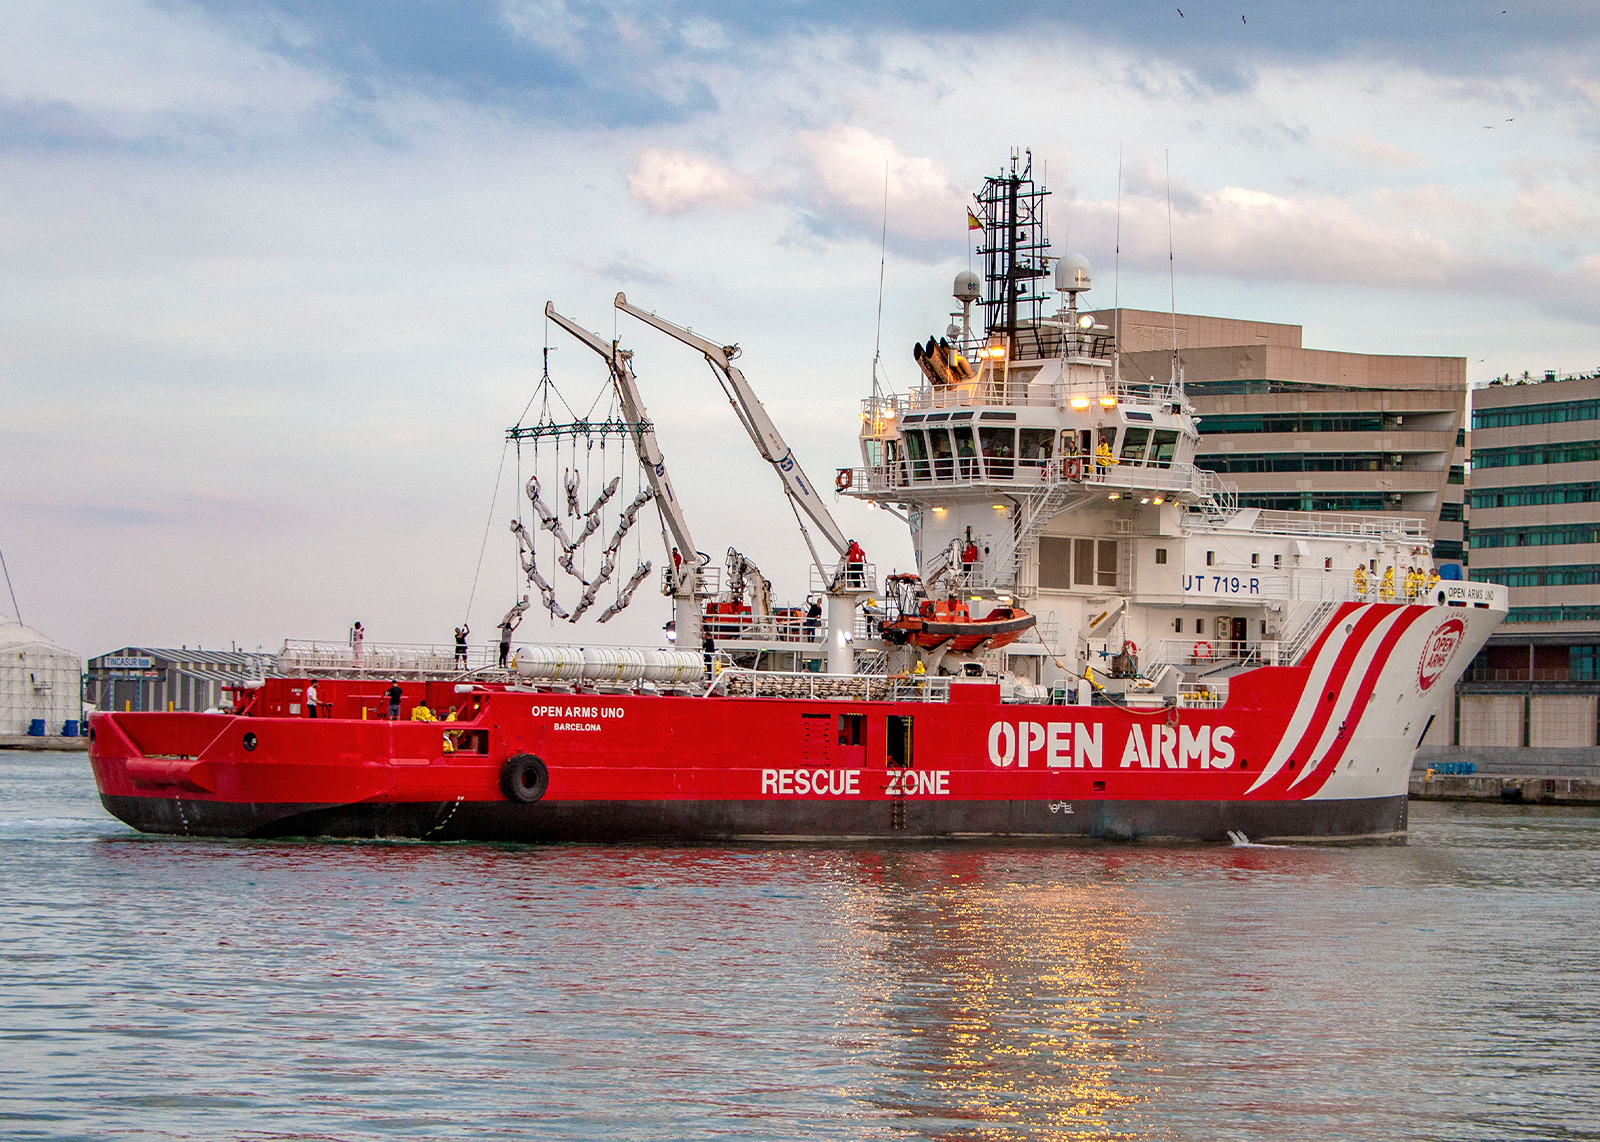 Presentación oficial del Open Arms Uno: el barco humanitario